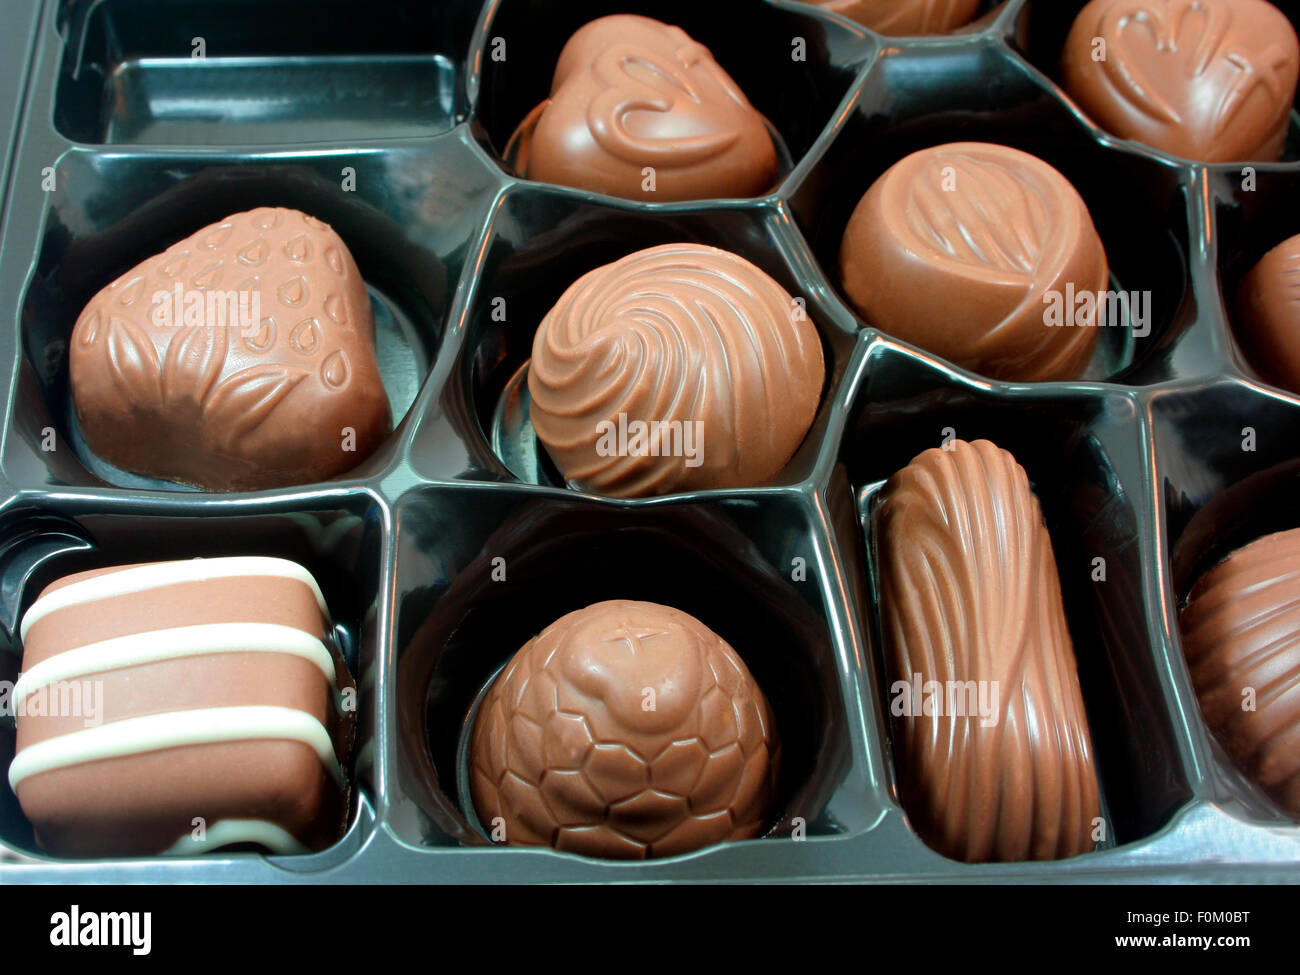 Plan macro sur une boîte de chocolats Banque D'Images